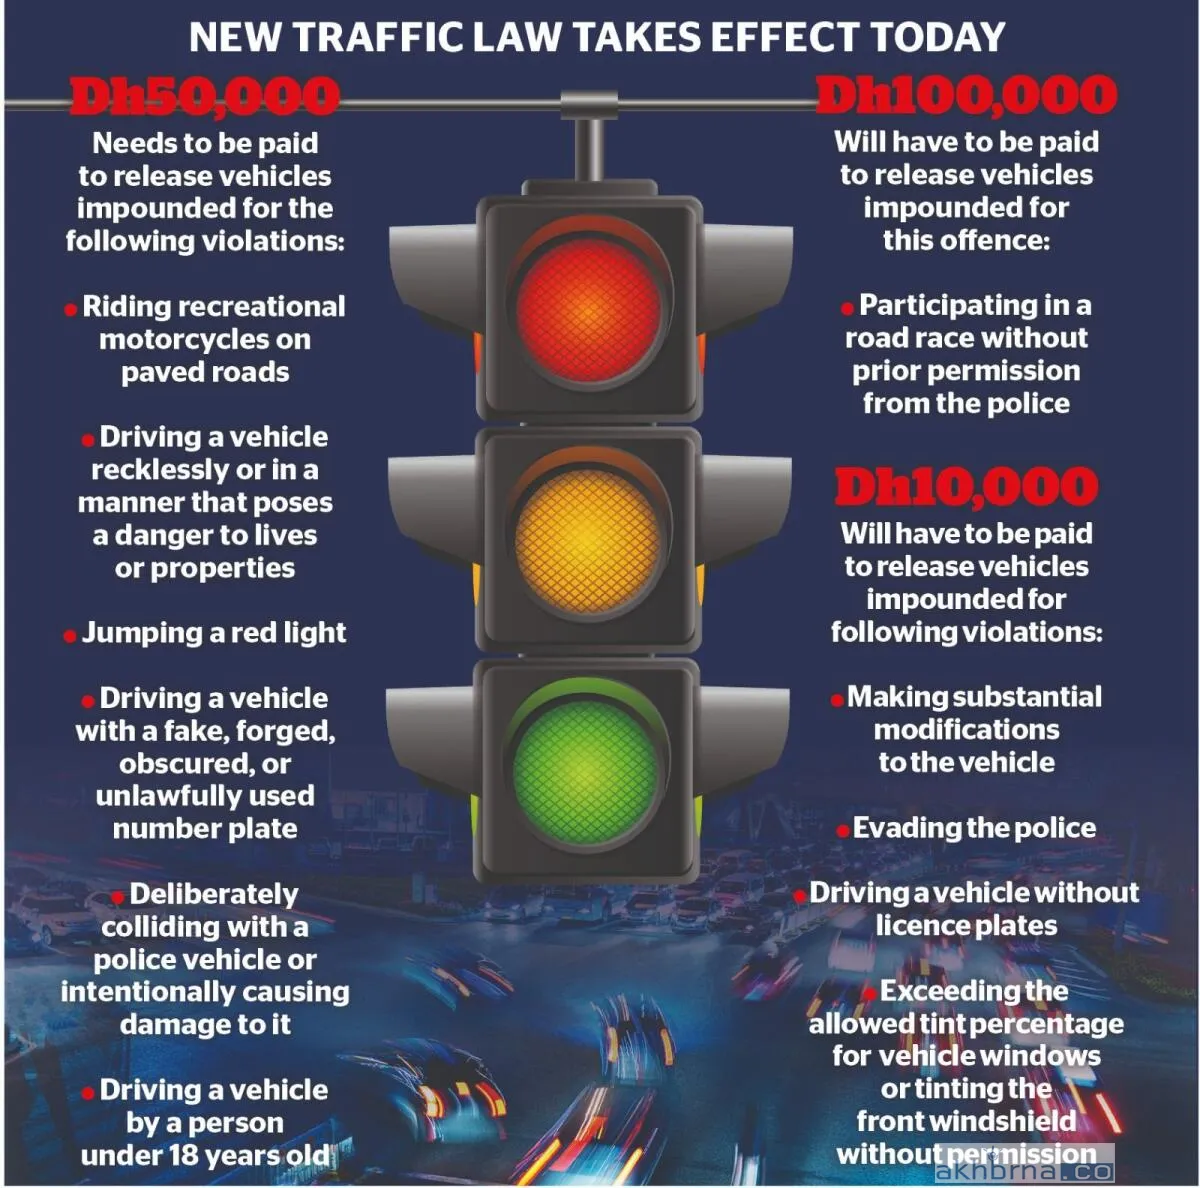 Dubai updates its traffic laws